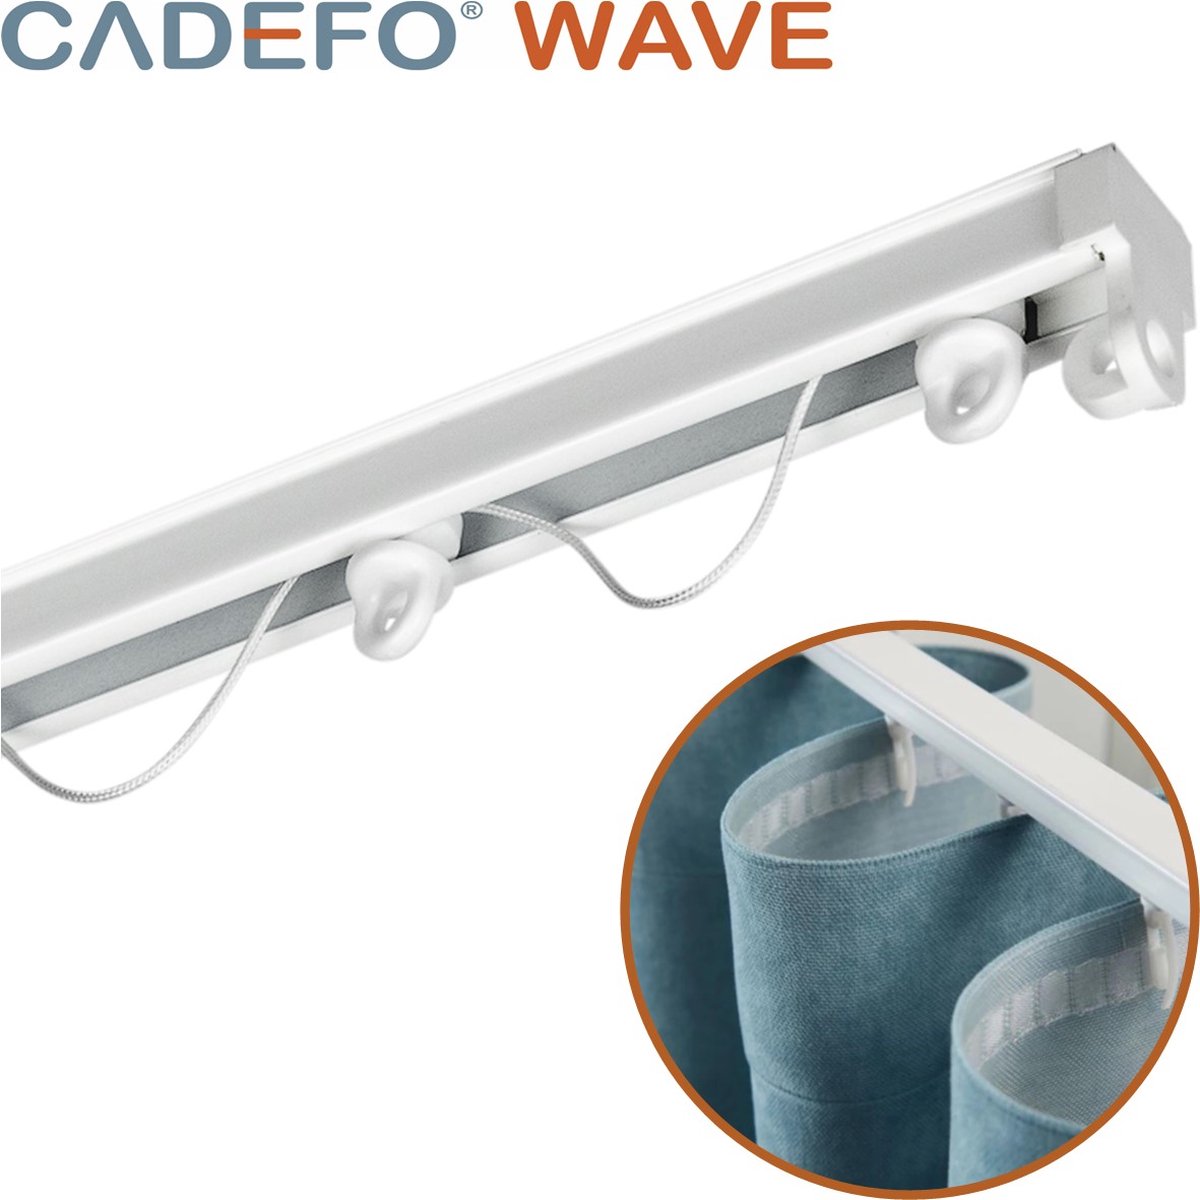 CADEFO WAVE (401 - 450 cm) Gordijnrails - Compleet op maat! - UIT 1 STUK - Leverbaar tot 6 meter - Plafondbevestiging - Lengte 417 cm